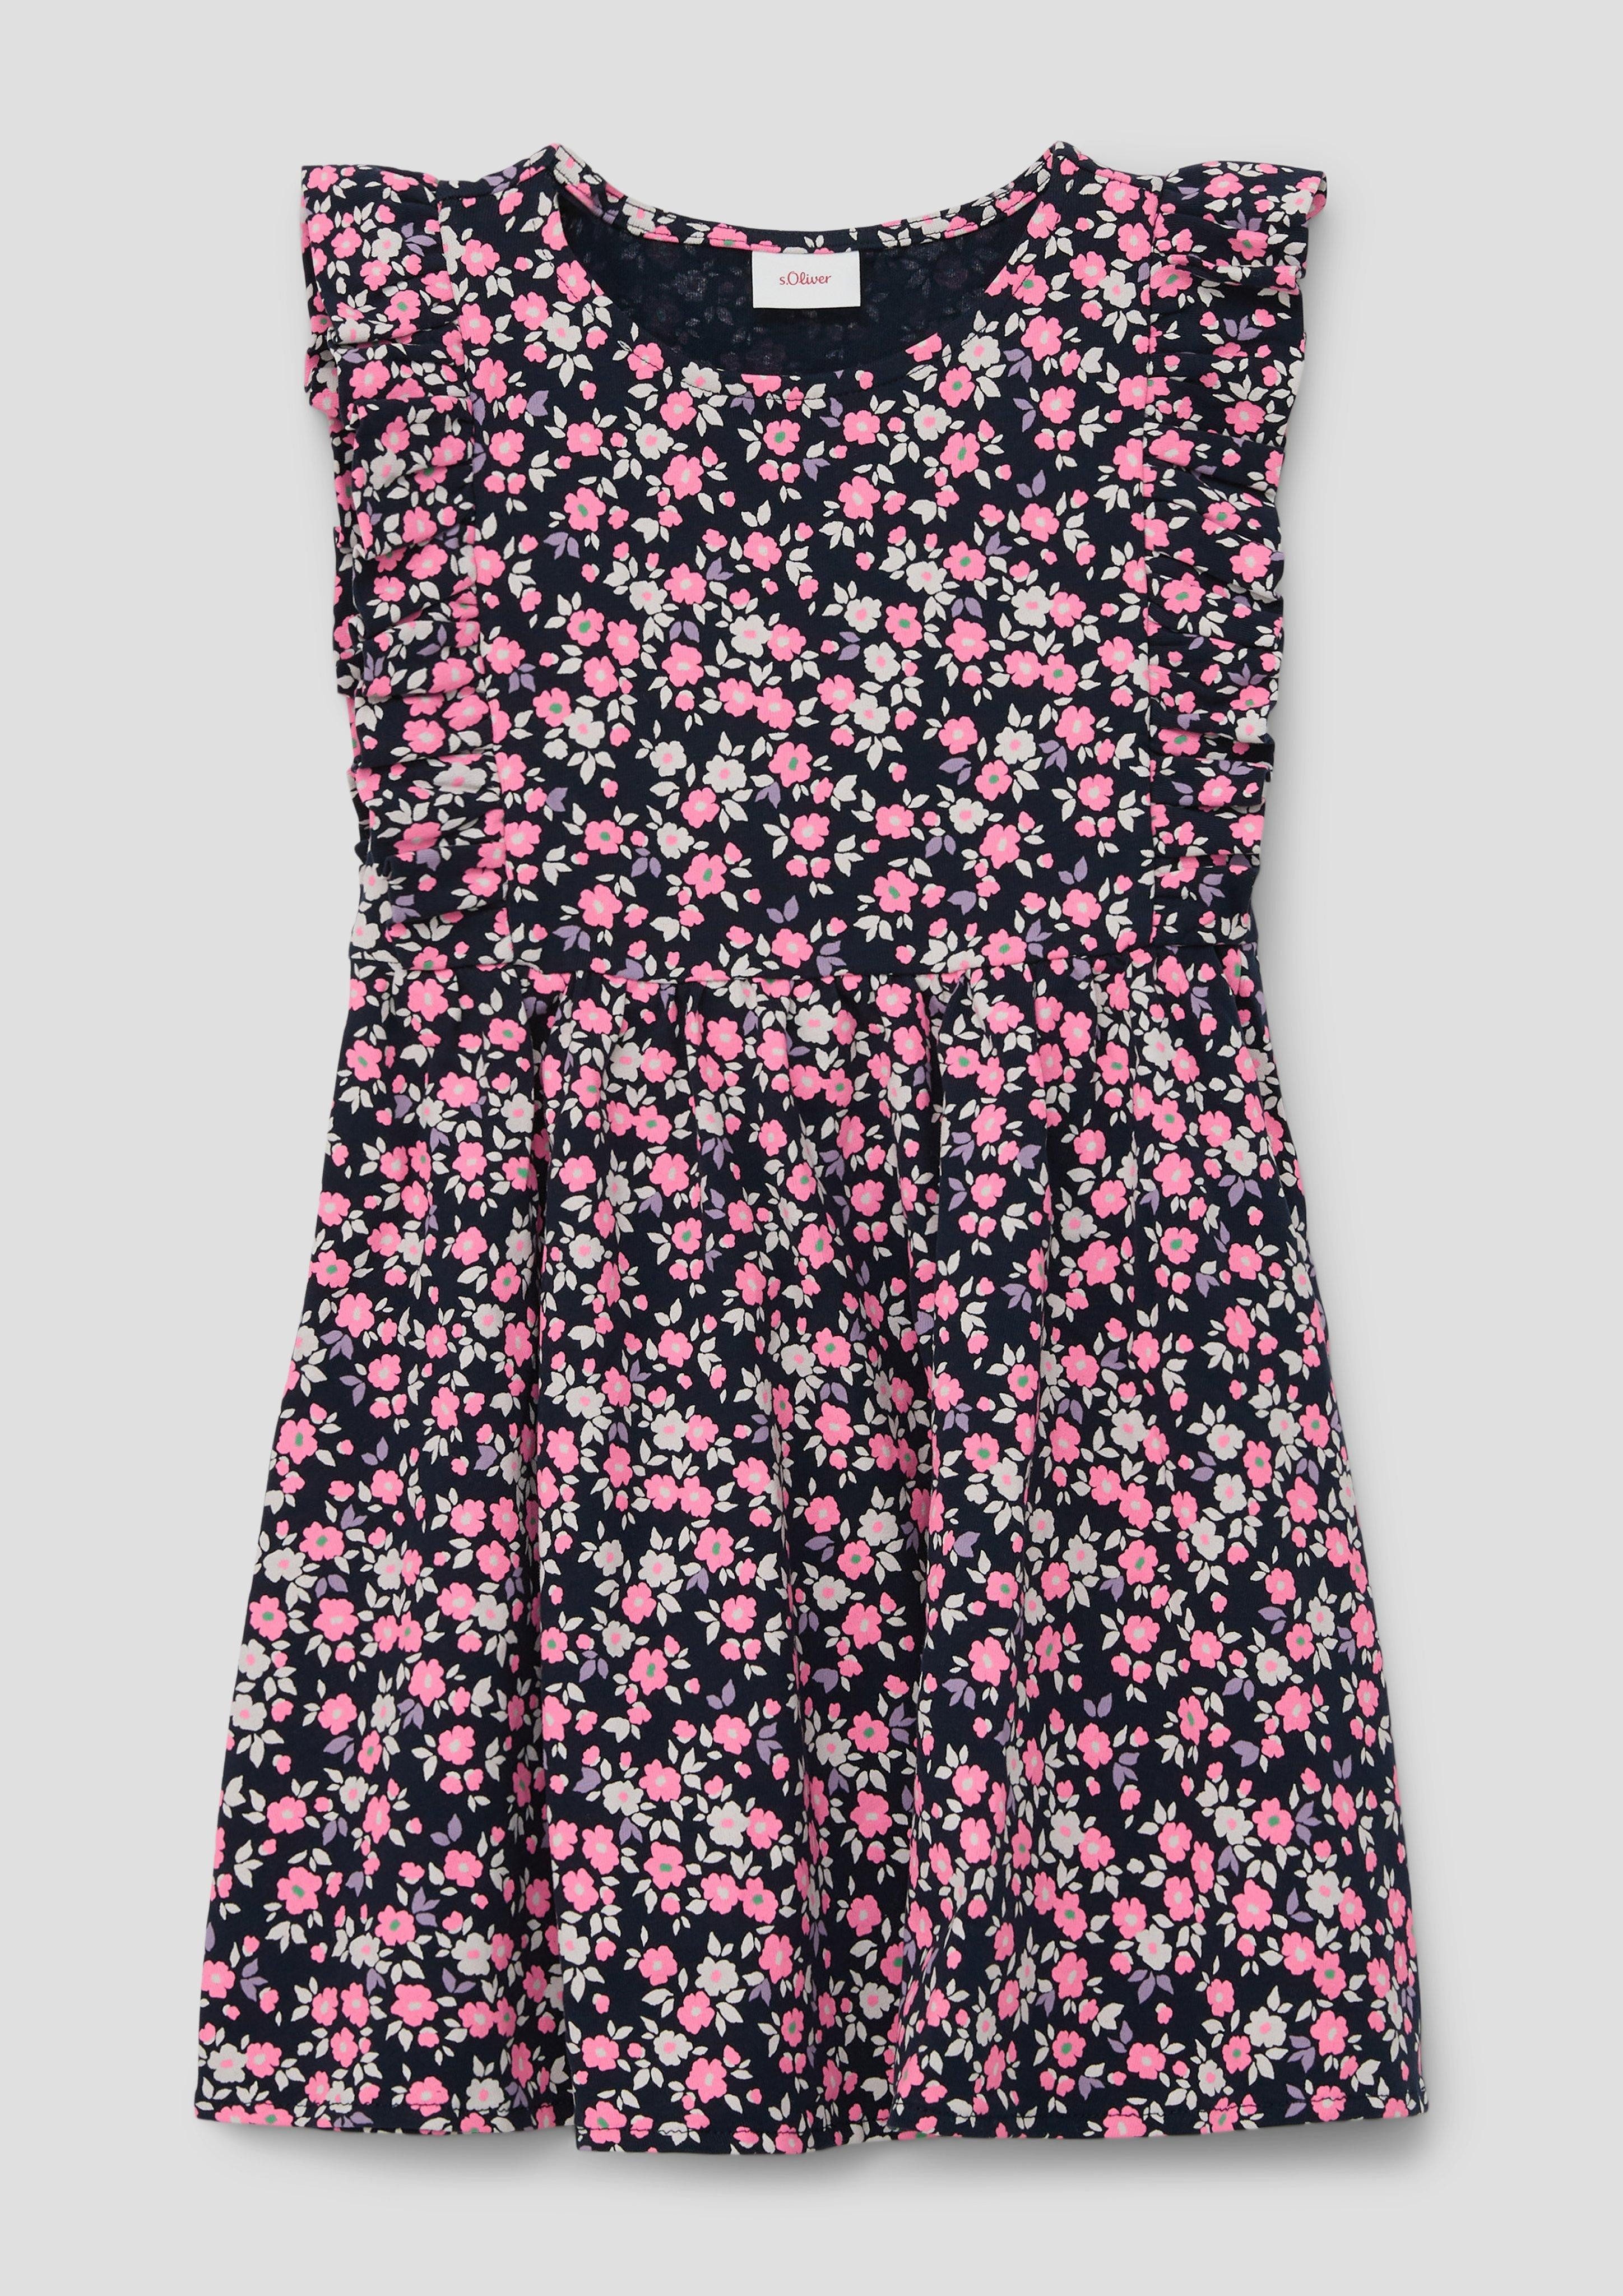 s.Oliver Minikleid Kleid mit floralem All-over-Print Volants